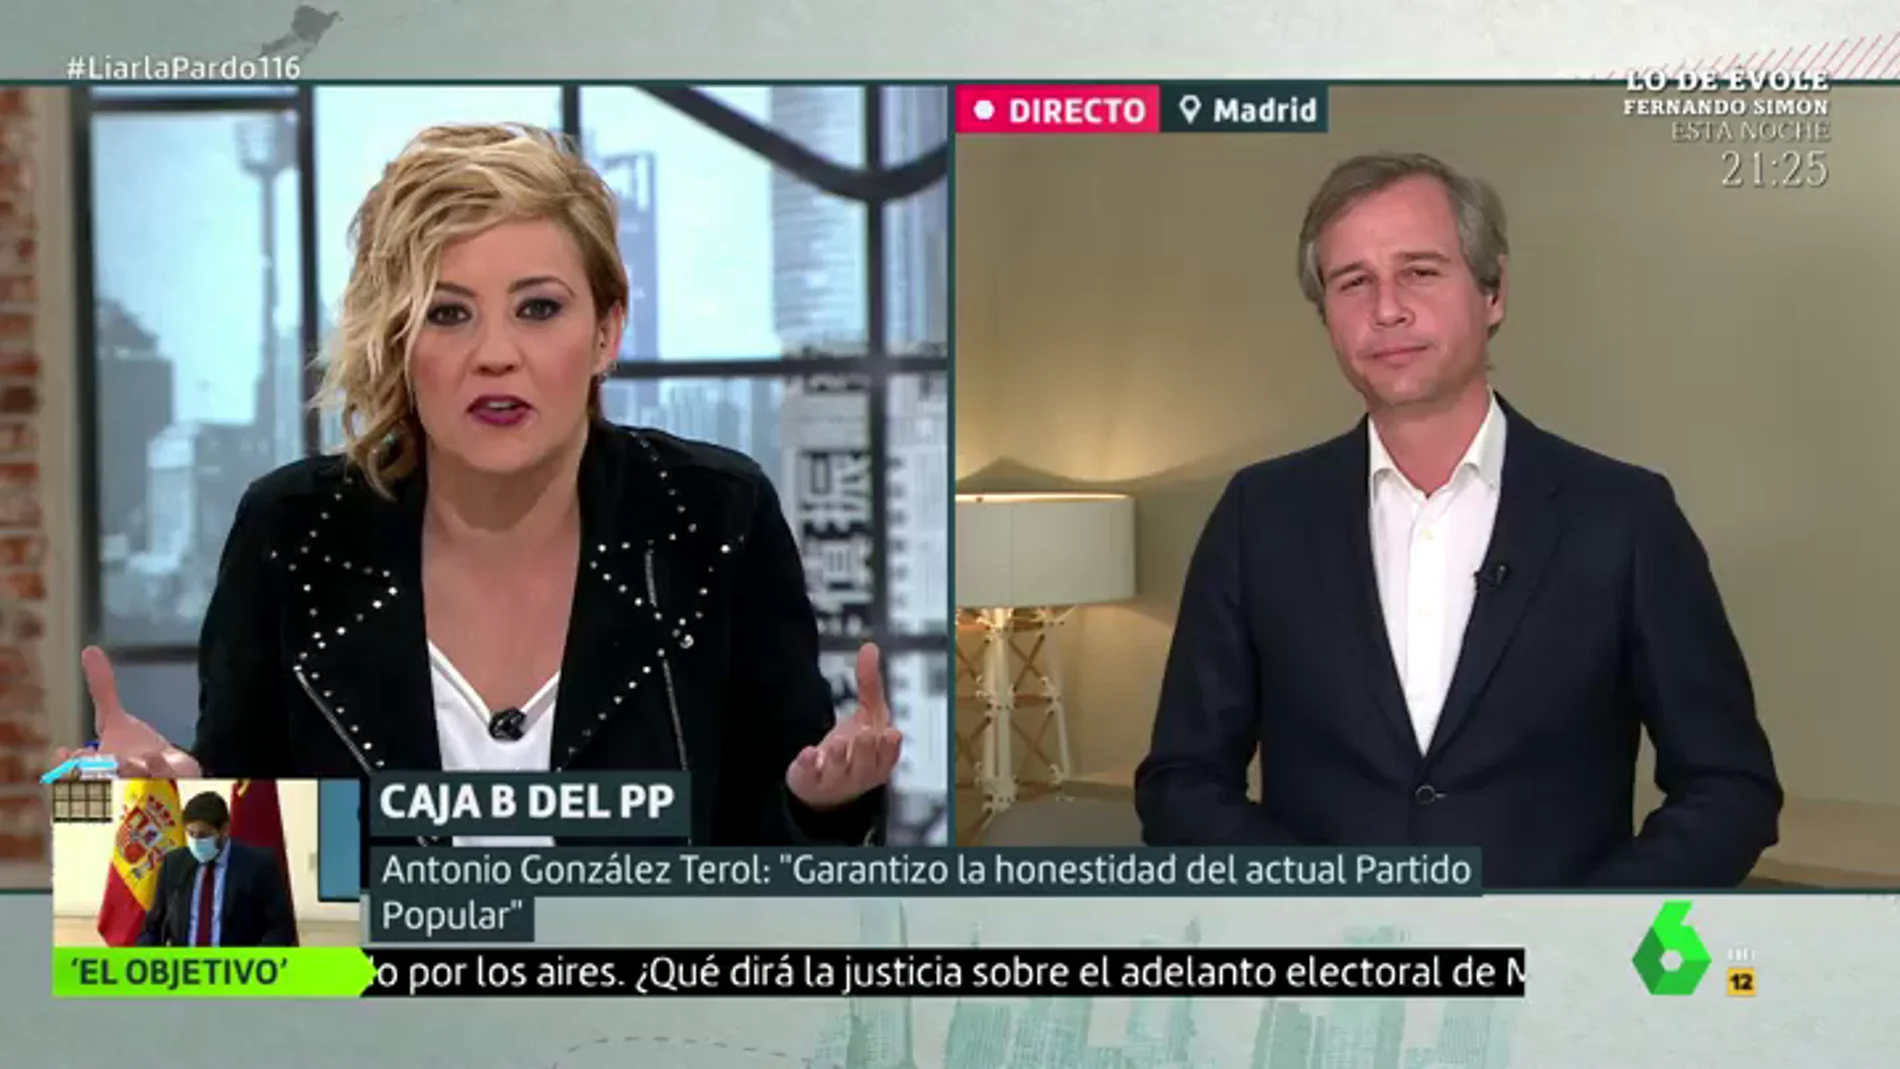 El tenso momento de la entrevista de Cristina Pardo a González Terol (PP): "¿Por qué les cuesta tanto decir si Bárcenas dice o no la verdad?"